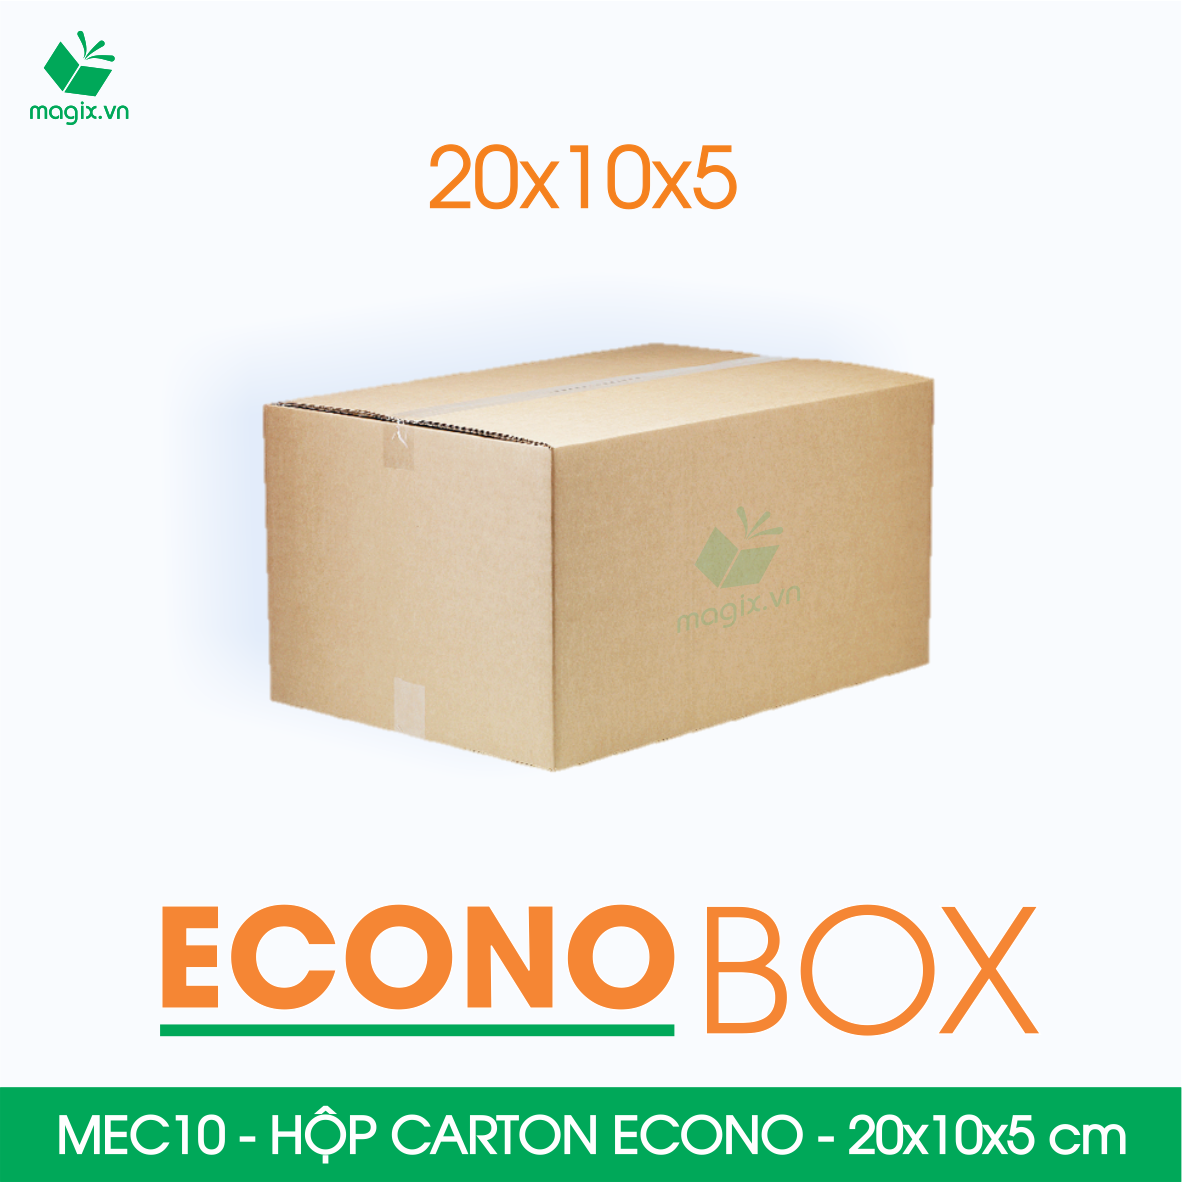 Hình ảnh MEC01 - 10x10x8 cm - Combo 100 thùng hộp carton trơn siêu tiết kiệm ECONO